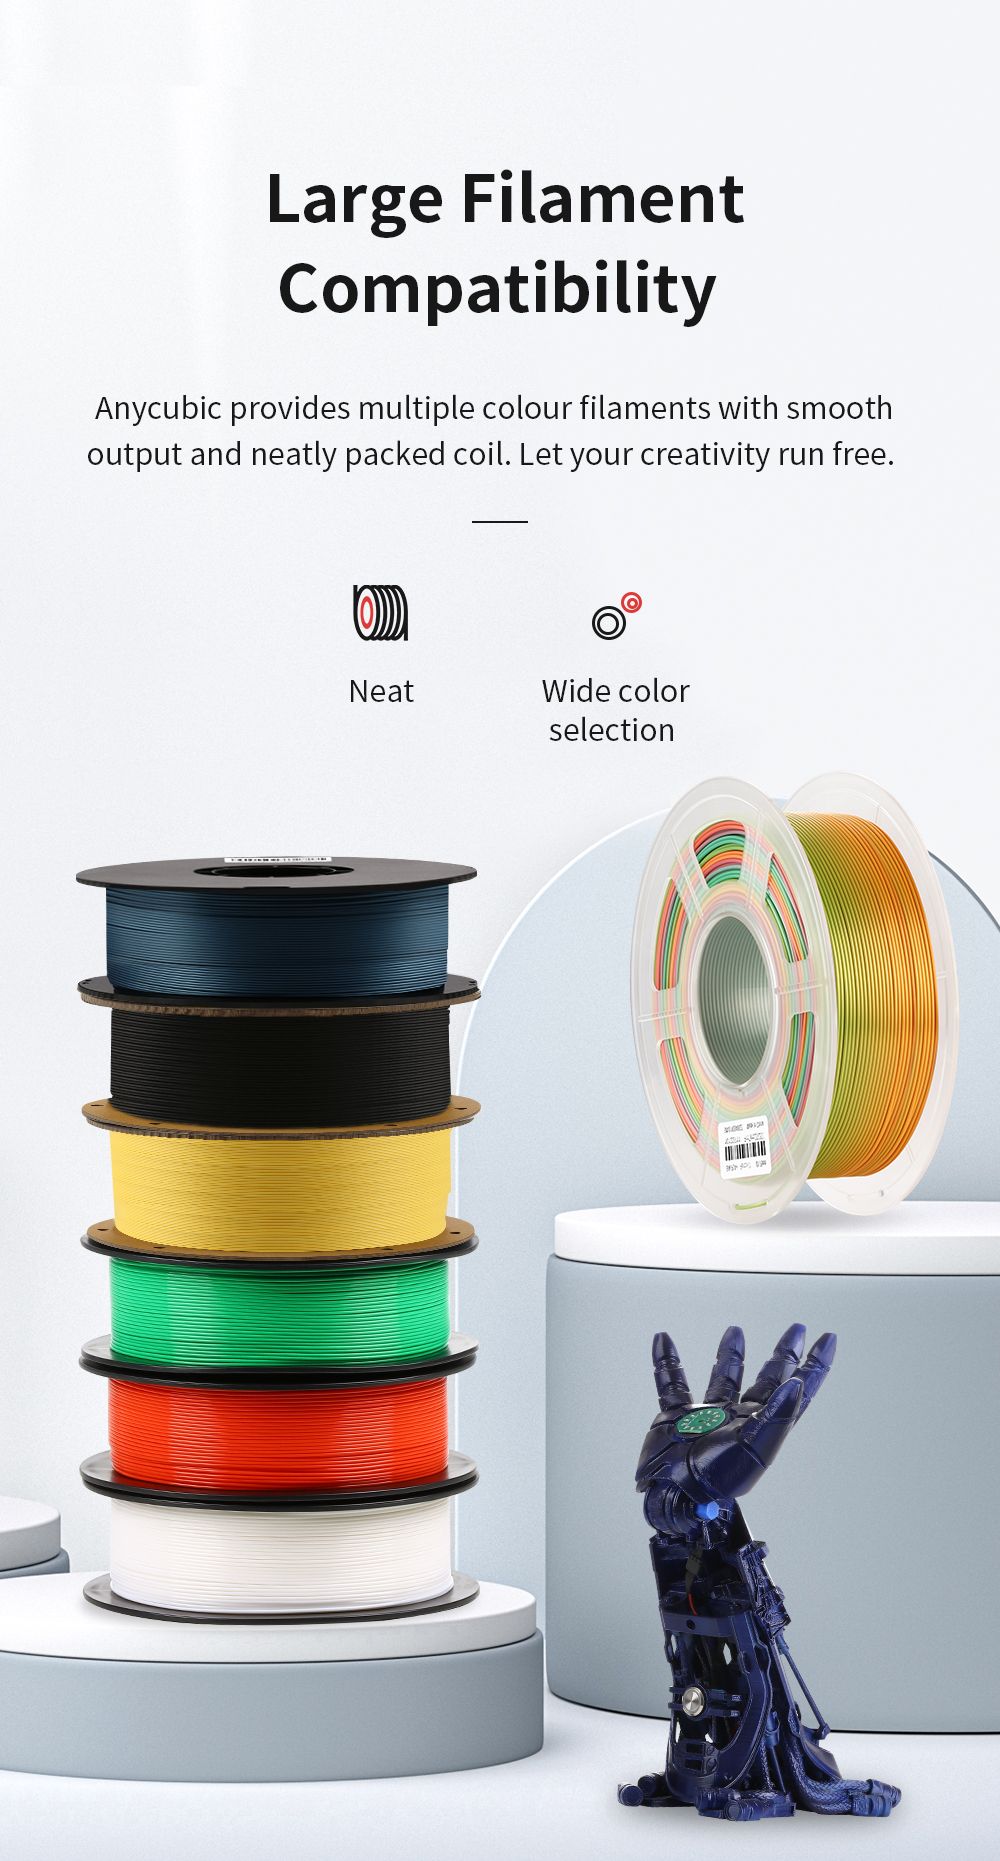 Anycubic Kobra Plus 3D nyomtató EU csatlakozó